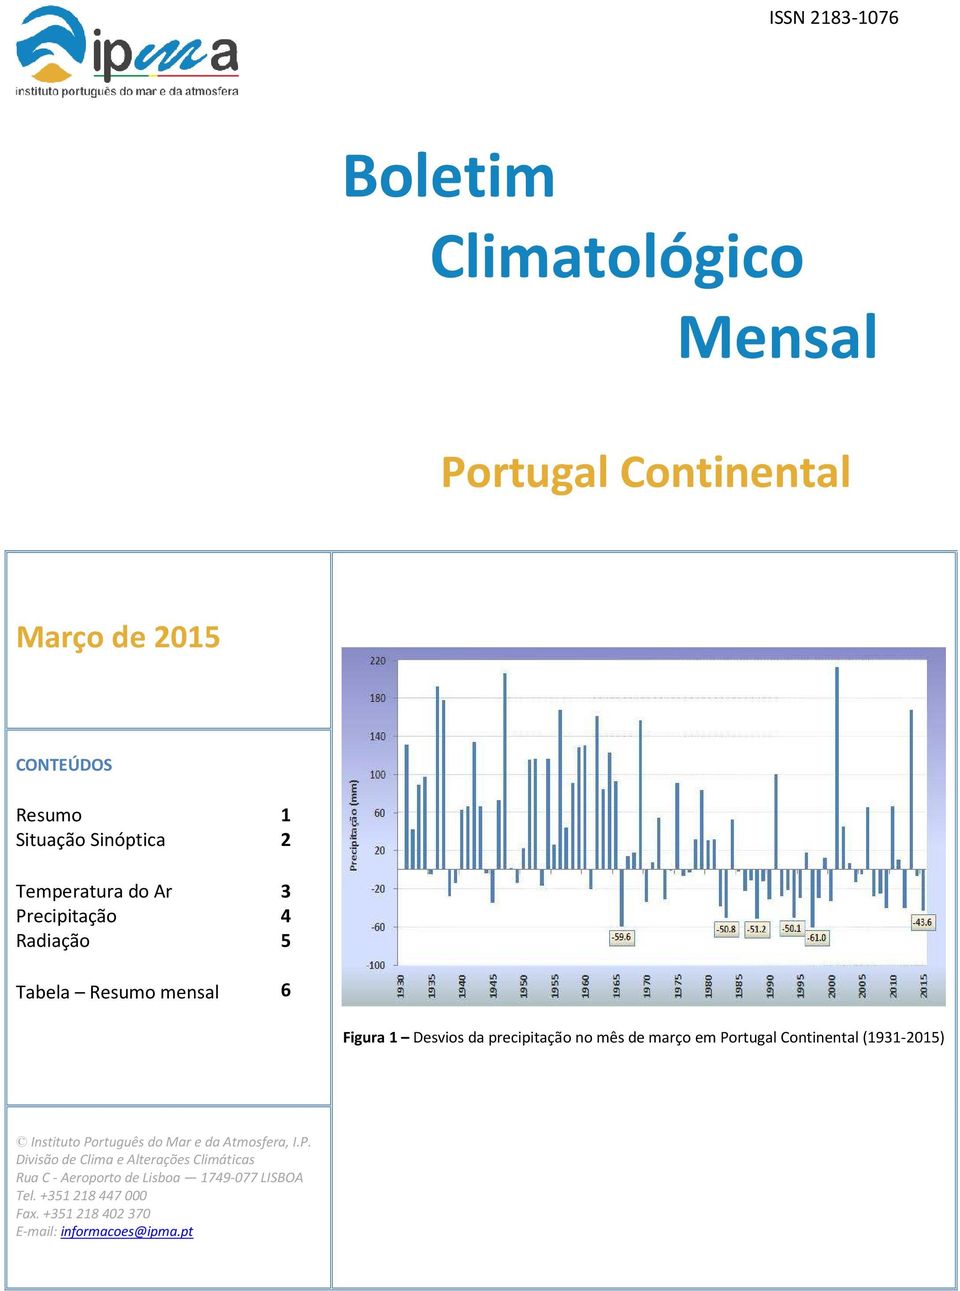 março em Portugal Continental (1931-2015) Instituto Português do Mar e da Atmosfera, I.P. Divisão de Clima e Alterações Climáticas Rua C - Aeroporto de Lisboa 1749-077 LISBOA Tel.